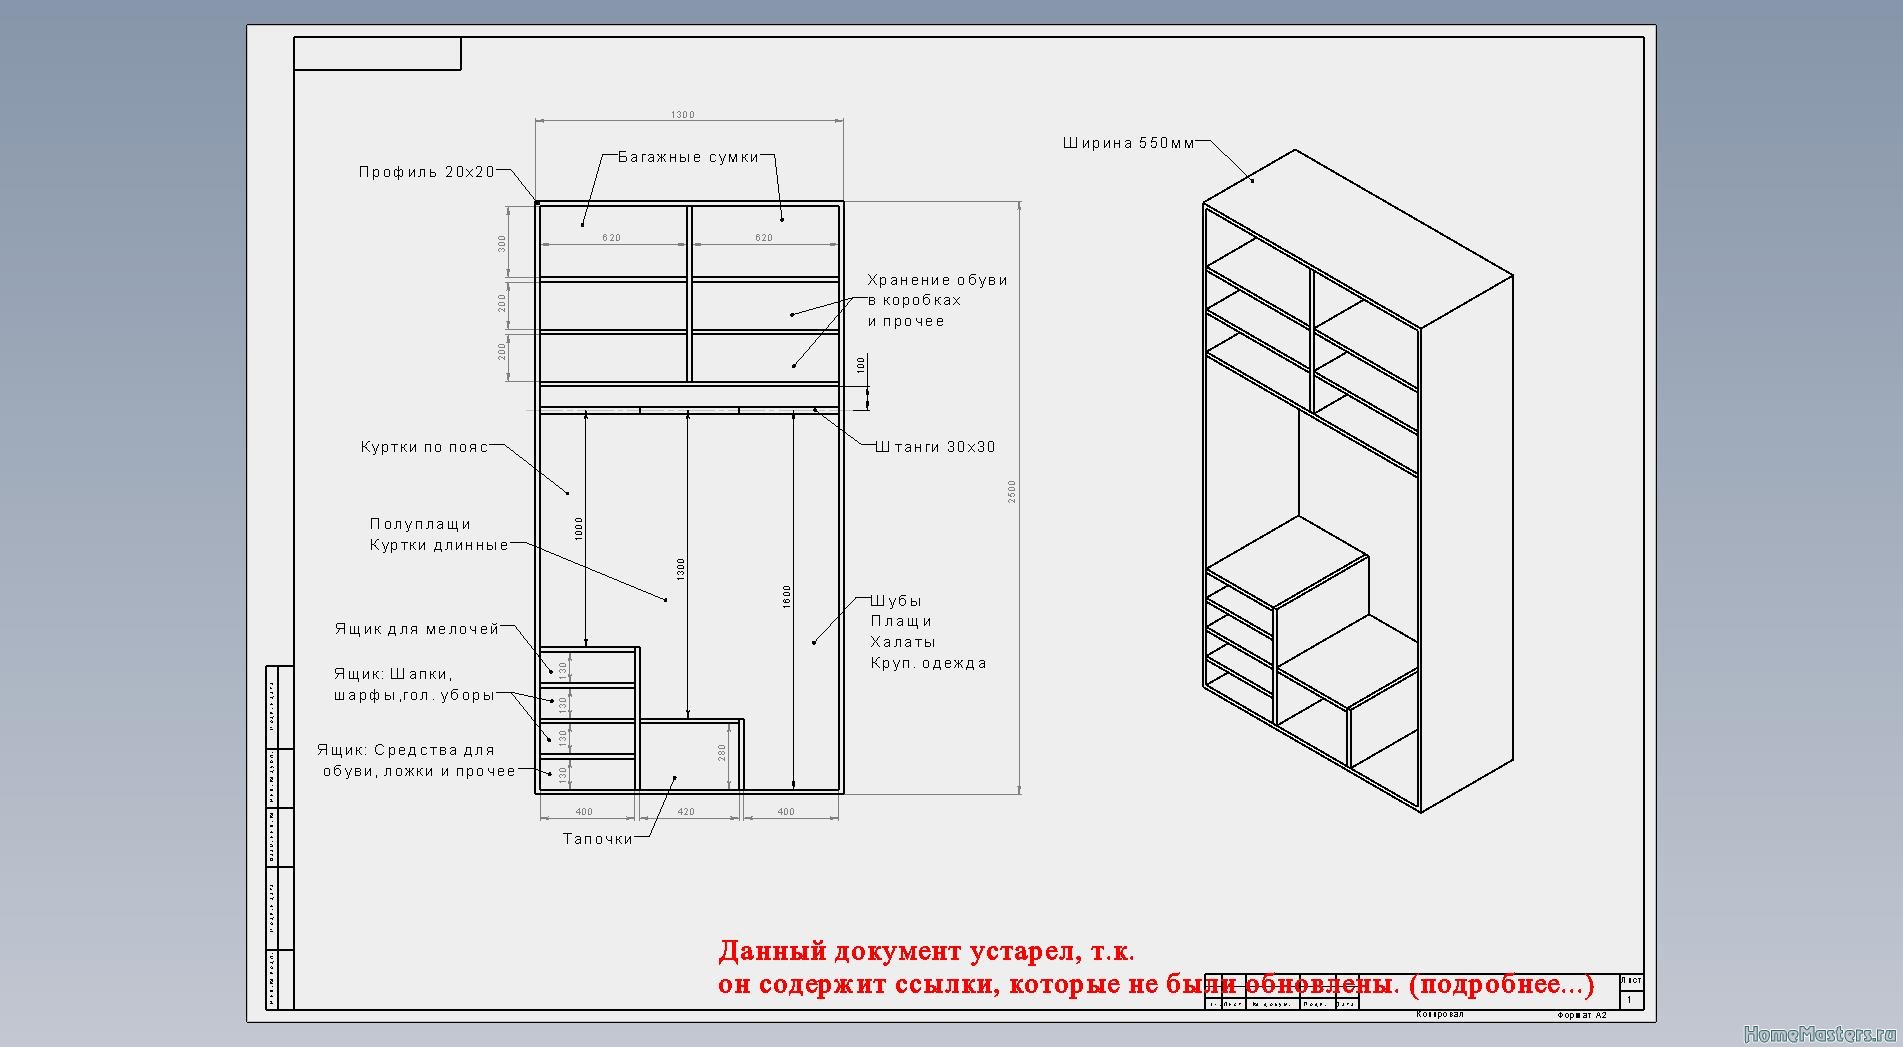 Элементы и детали встроенных шкафов и антресолей для жилых зданий технические условия